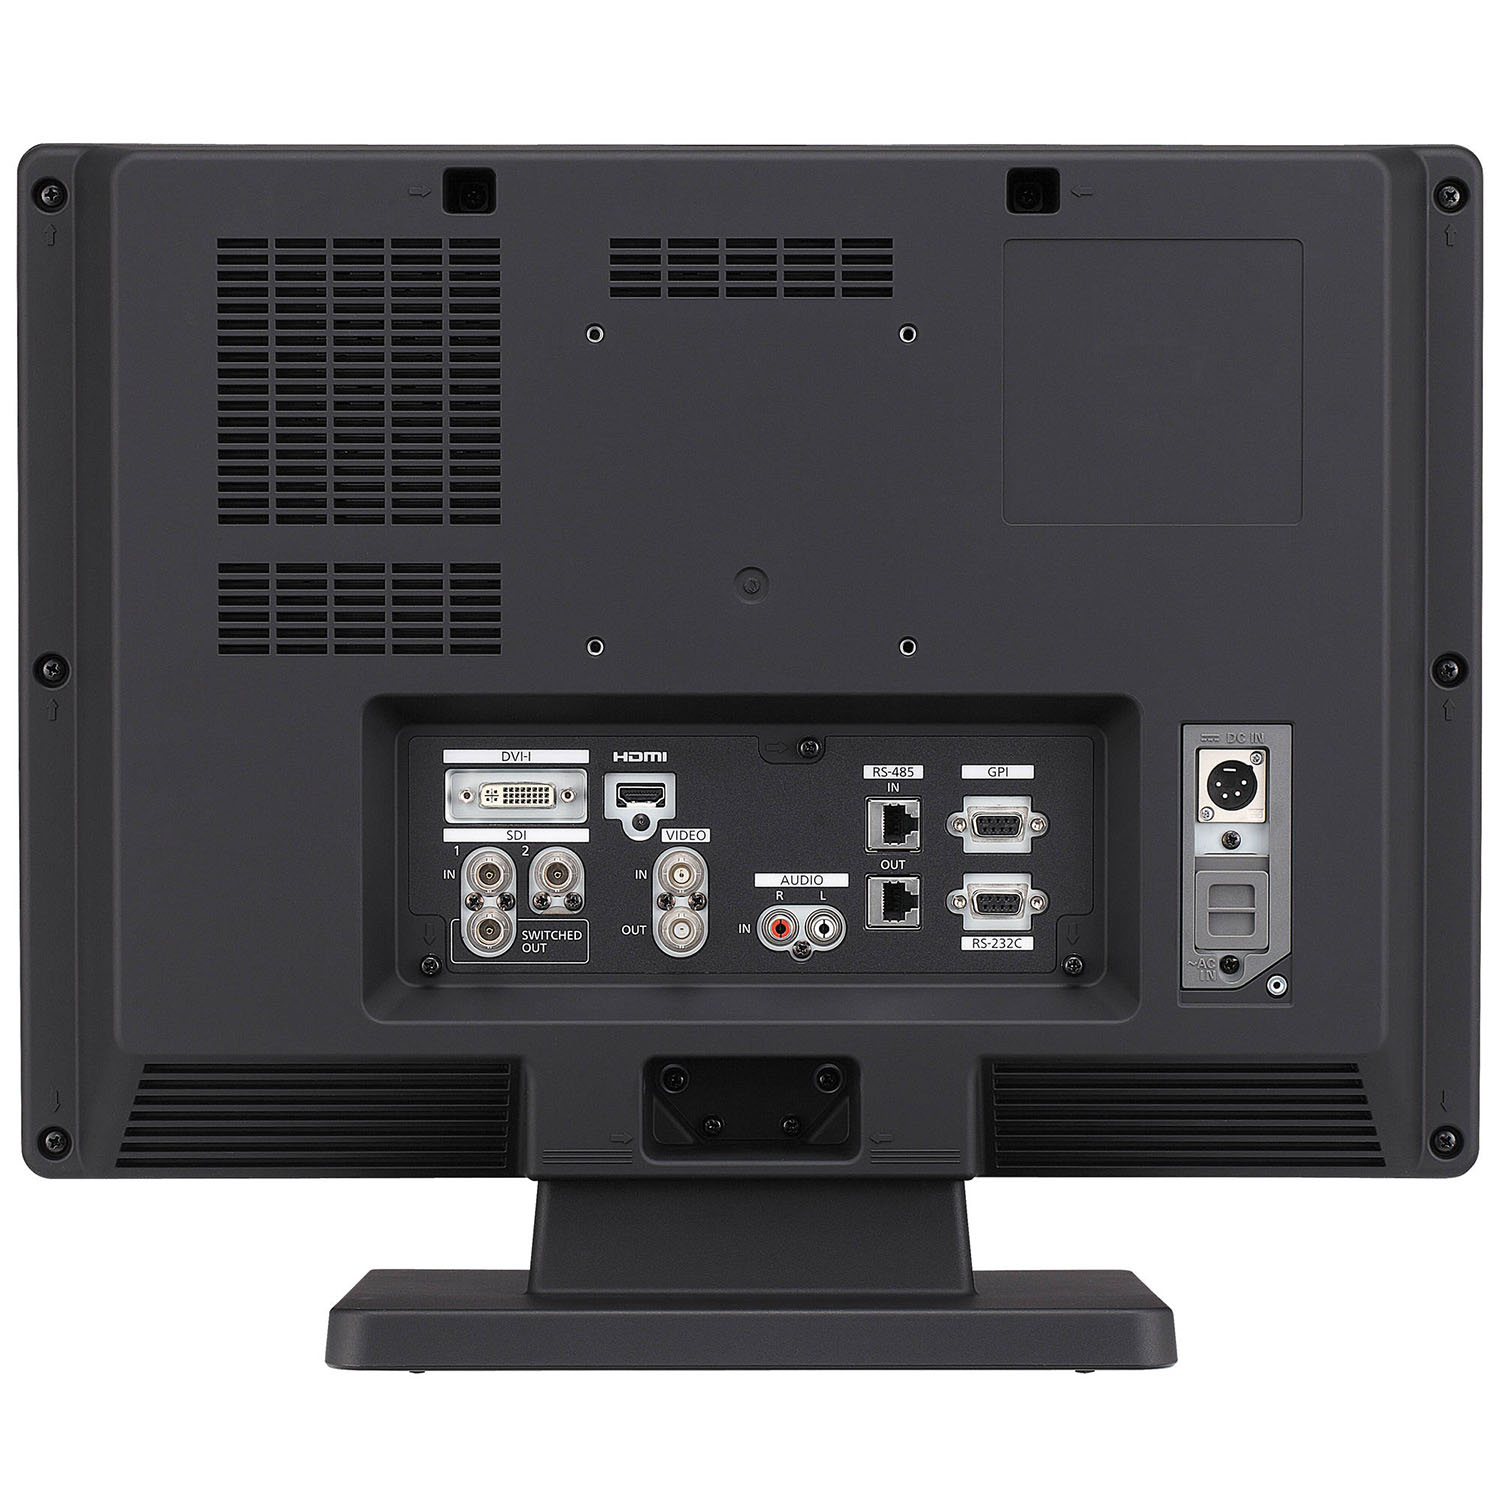 Panasonic BT-LH1850 Monitor Rental Tampa FL